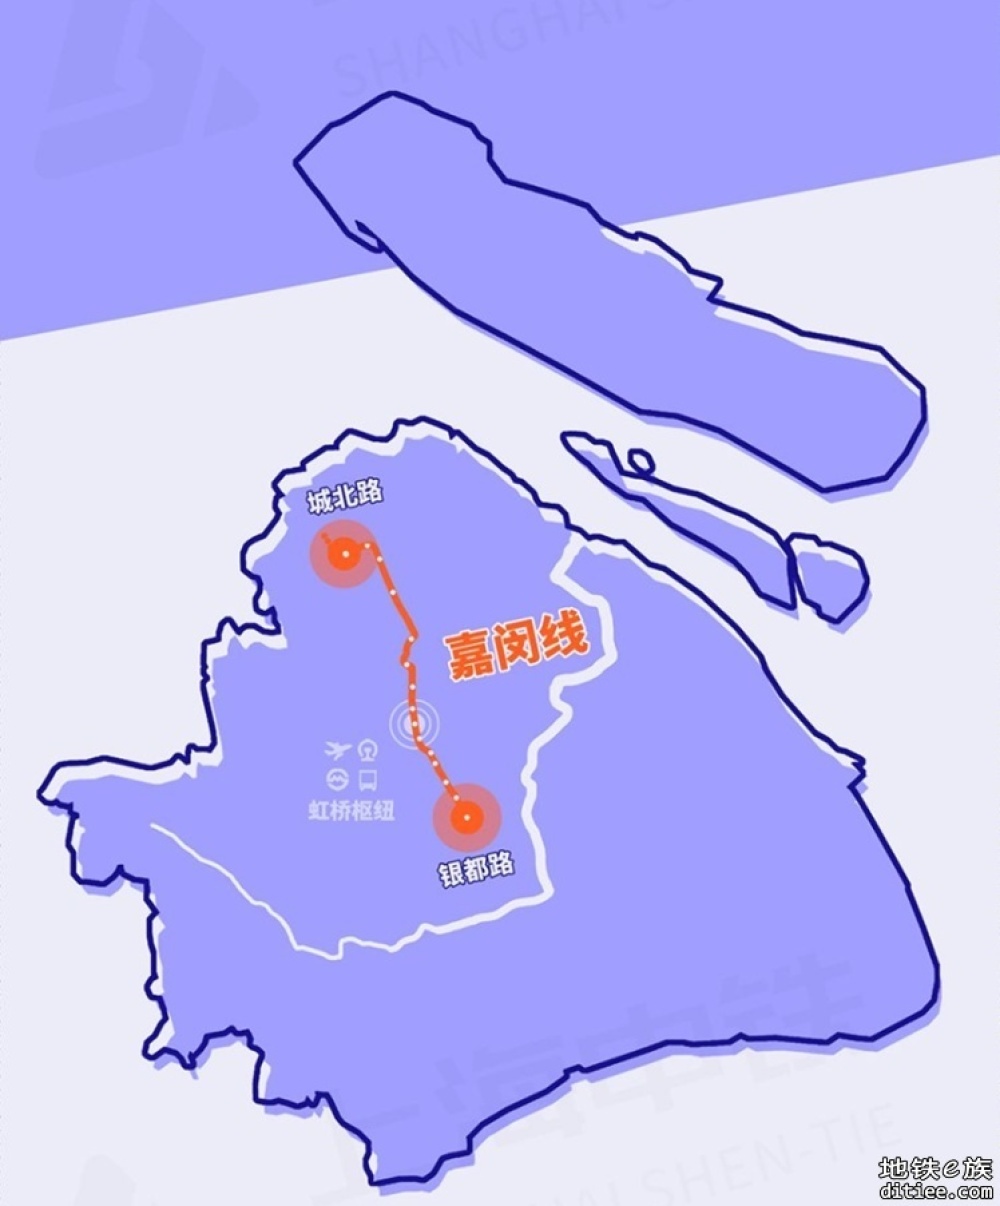 市域铁路嘉闵线和地铁有什么区别？